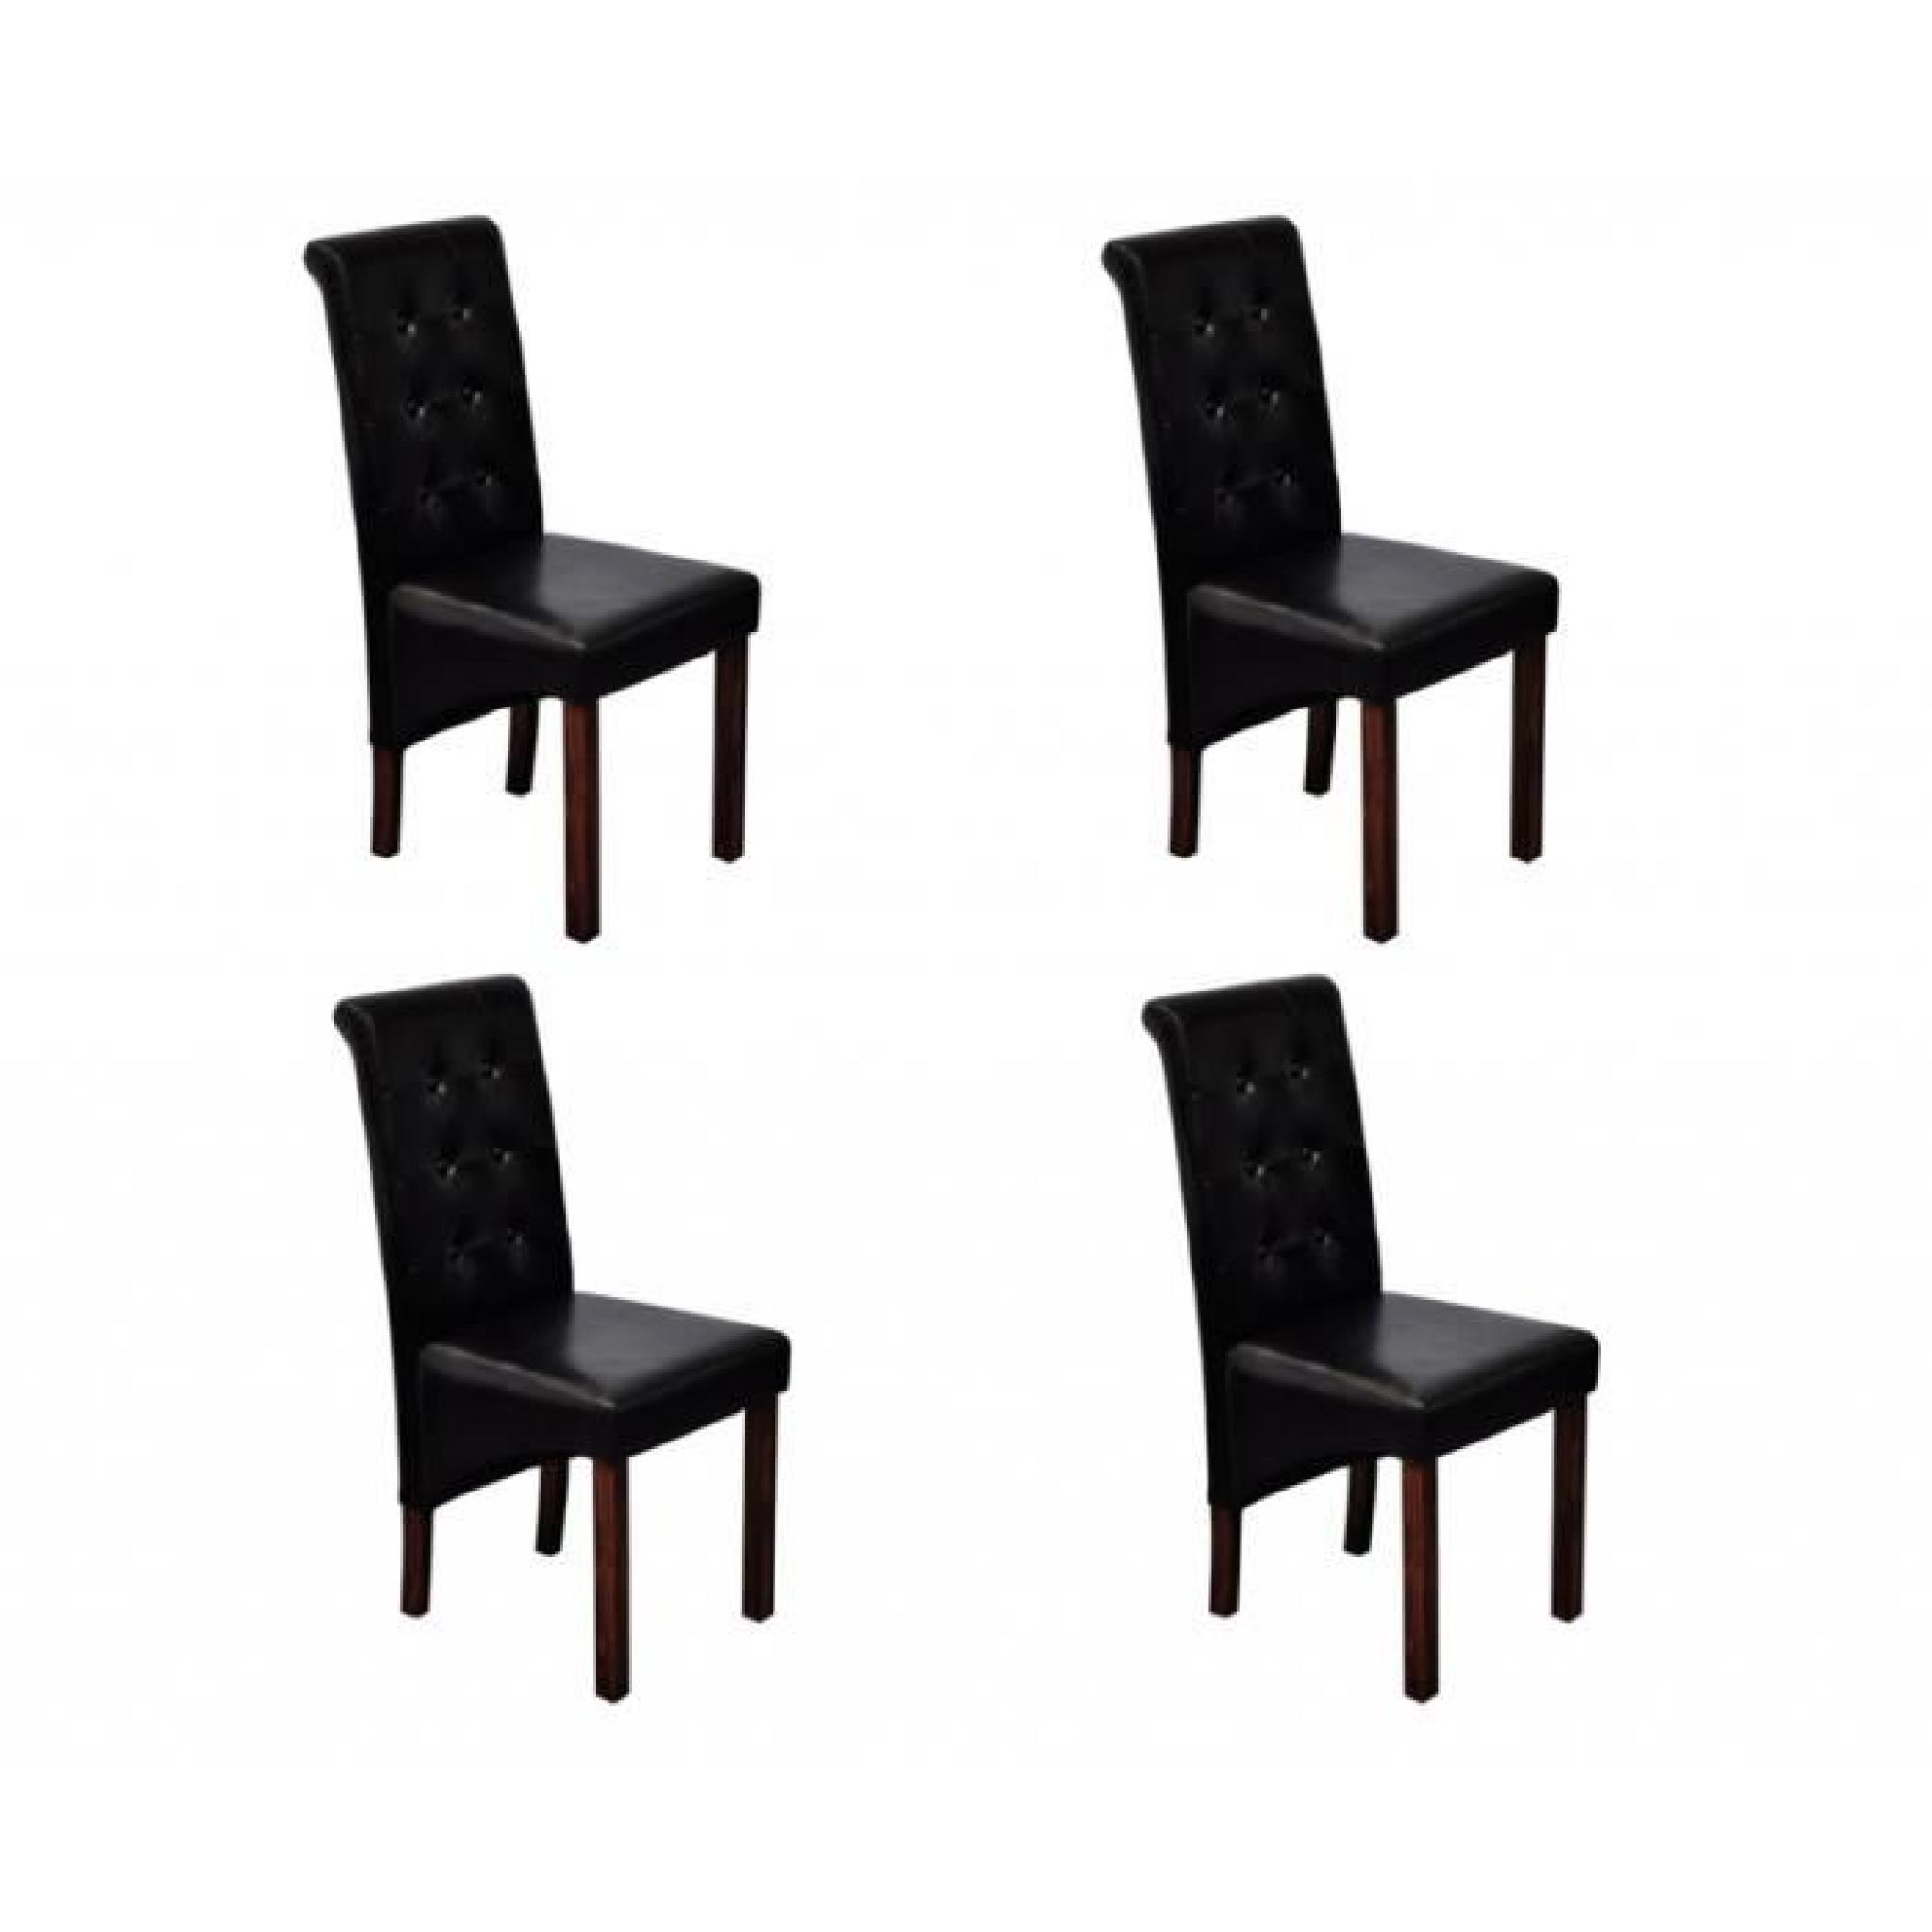 Chaise antique simili cuir noir (lot de 4)